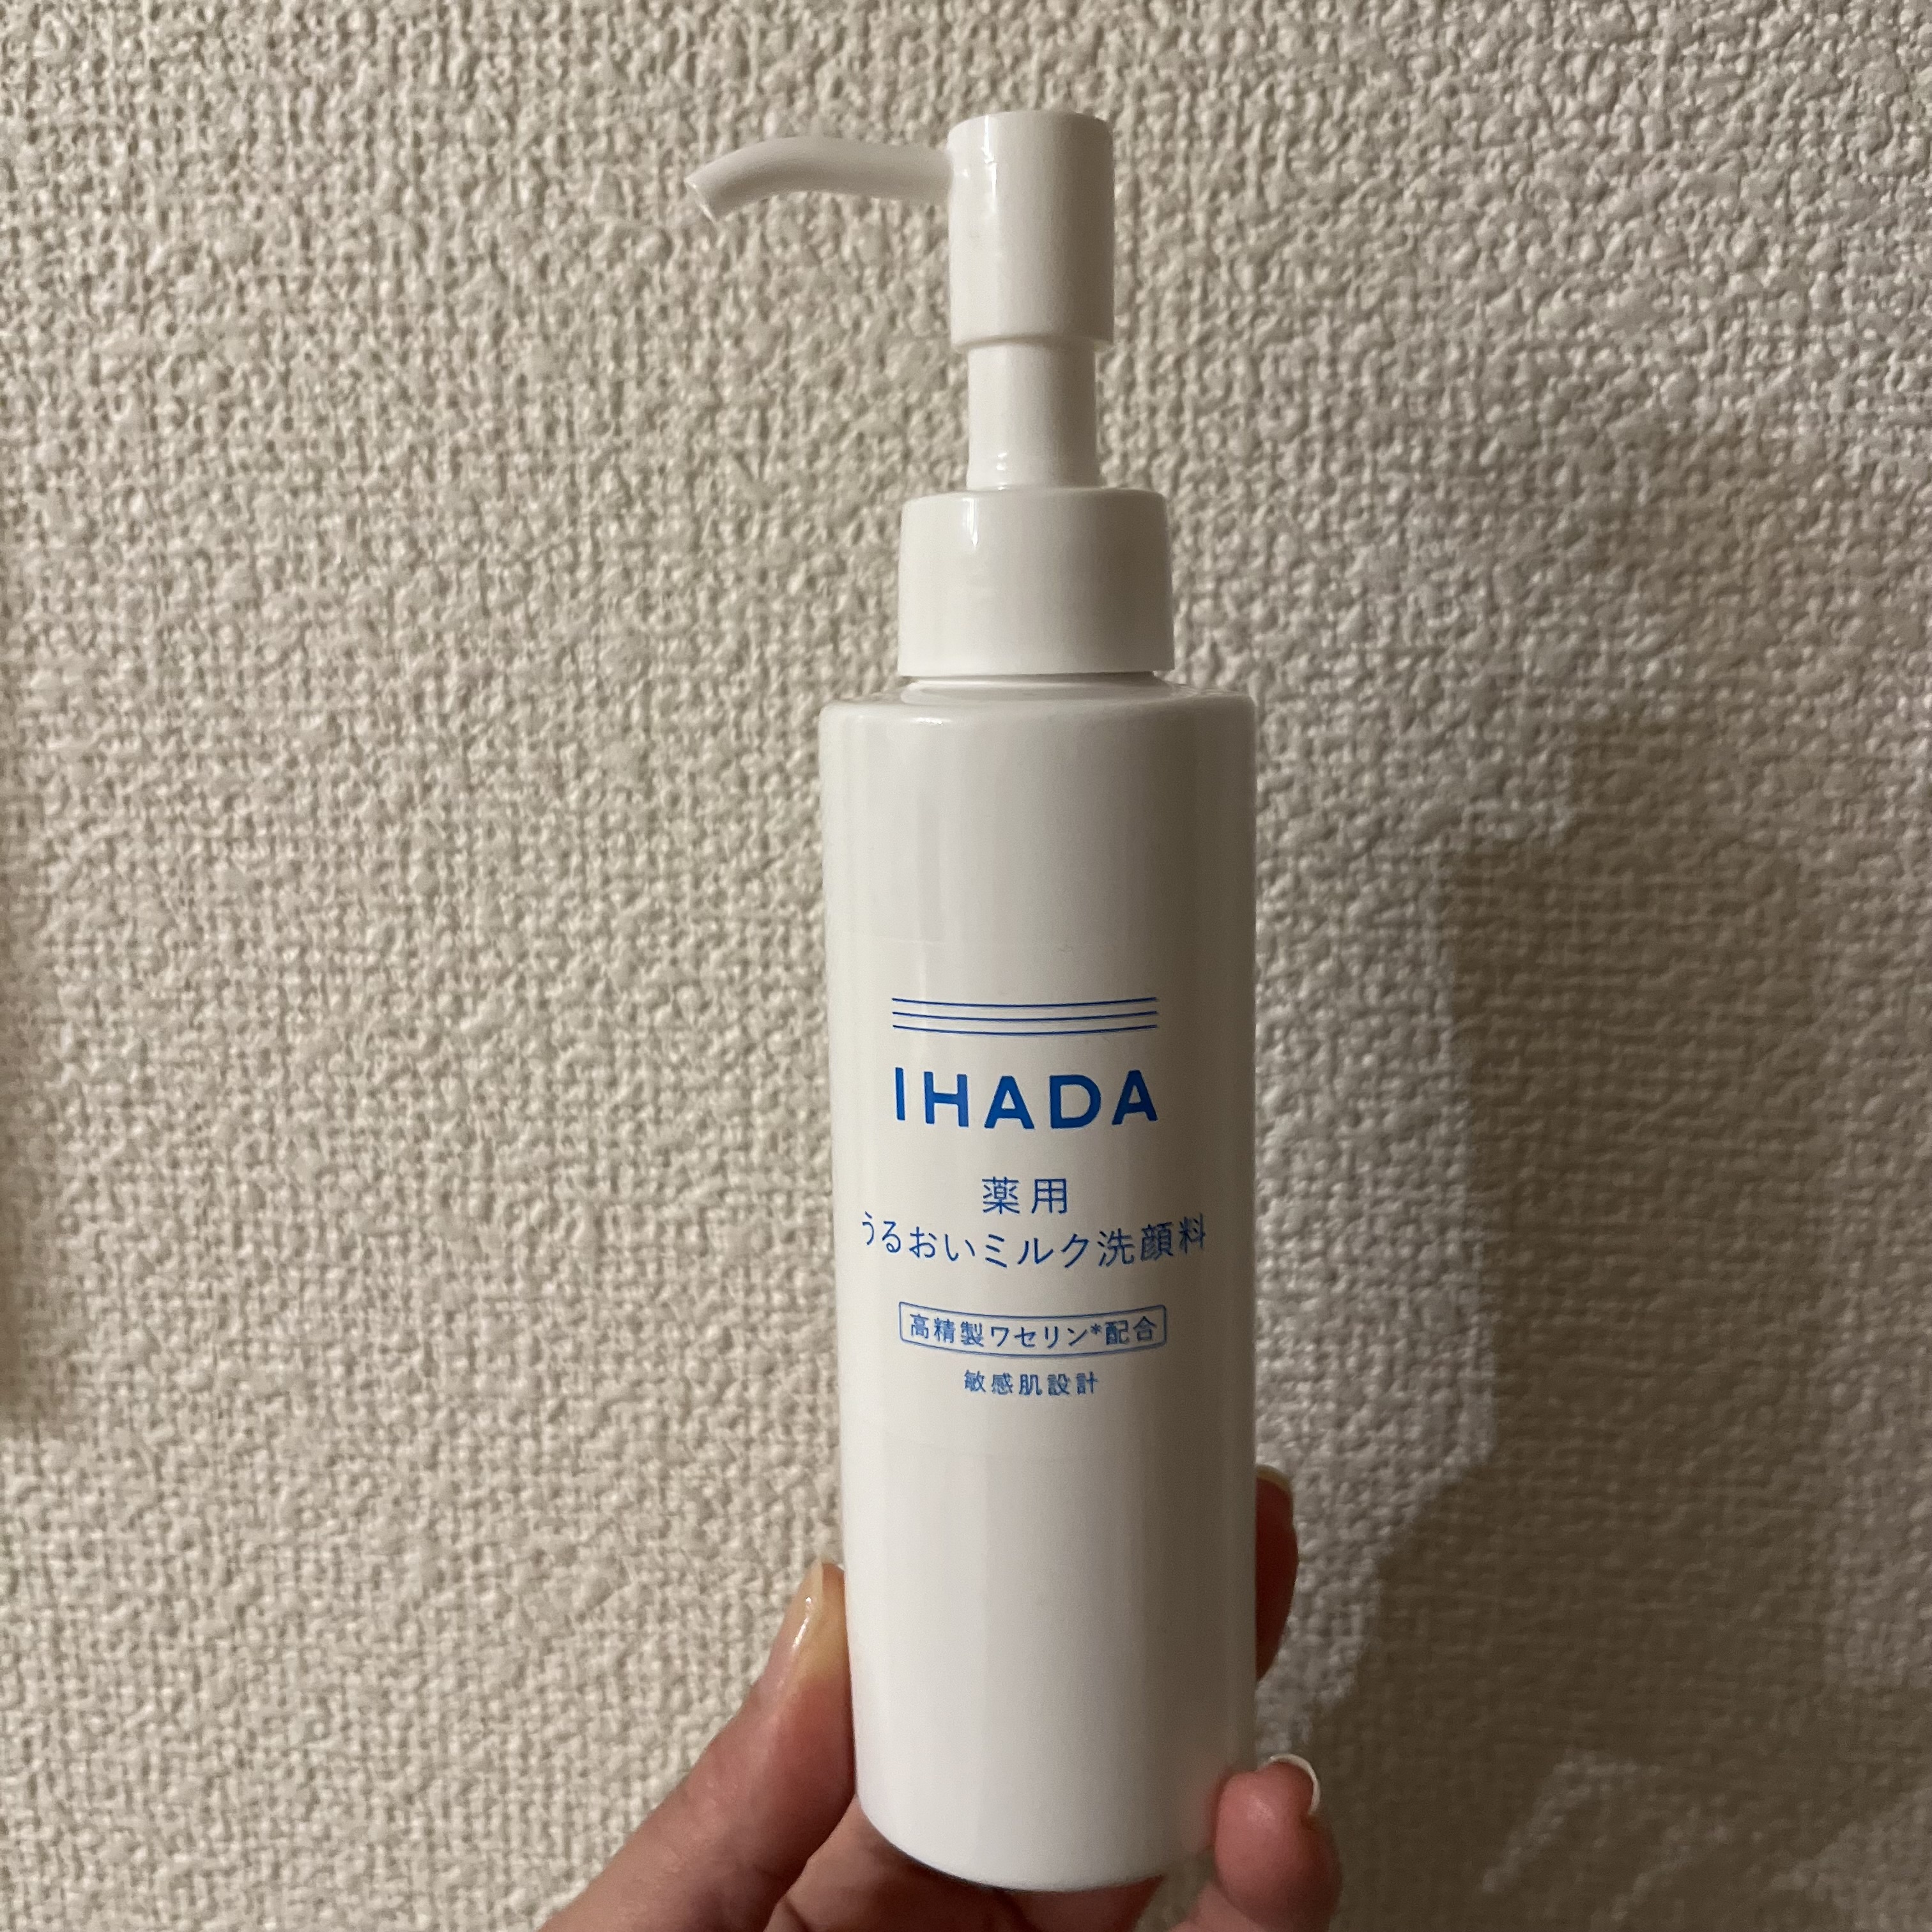 イハダ / 薬用うるおいミルク洗顔料の公式商品情報｜美容・化粧品情報 